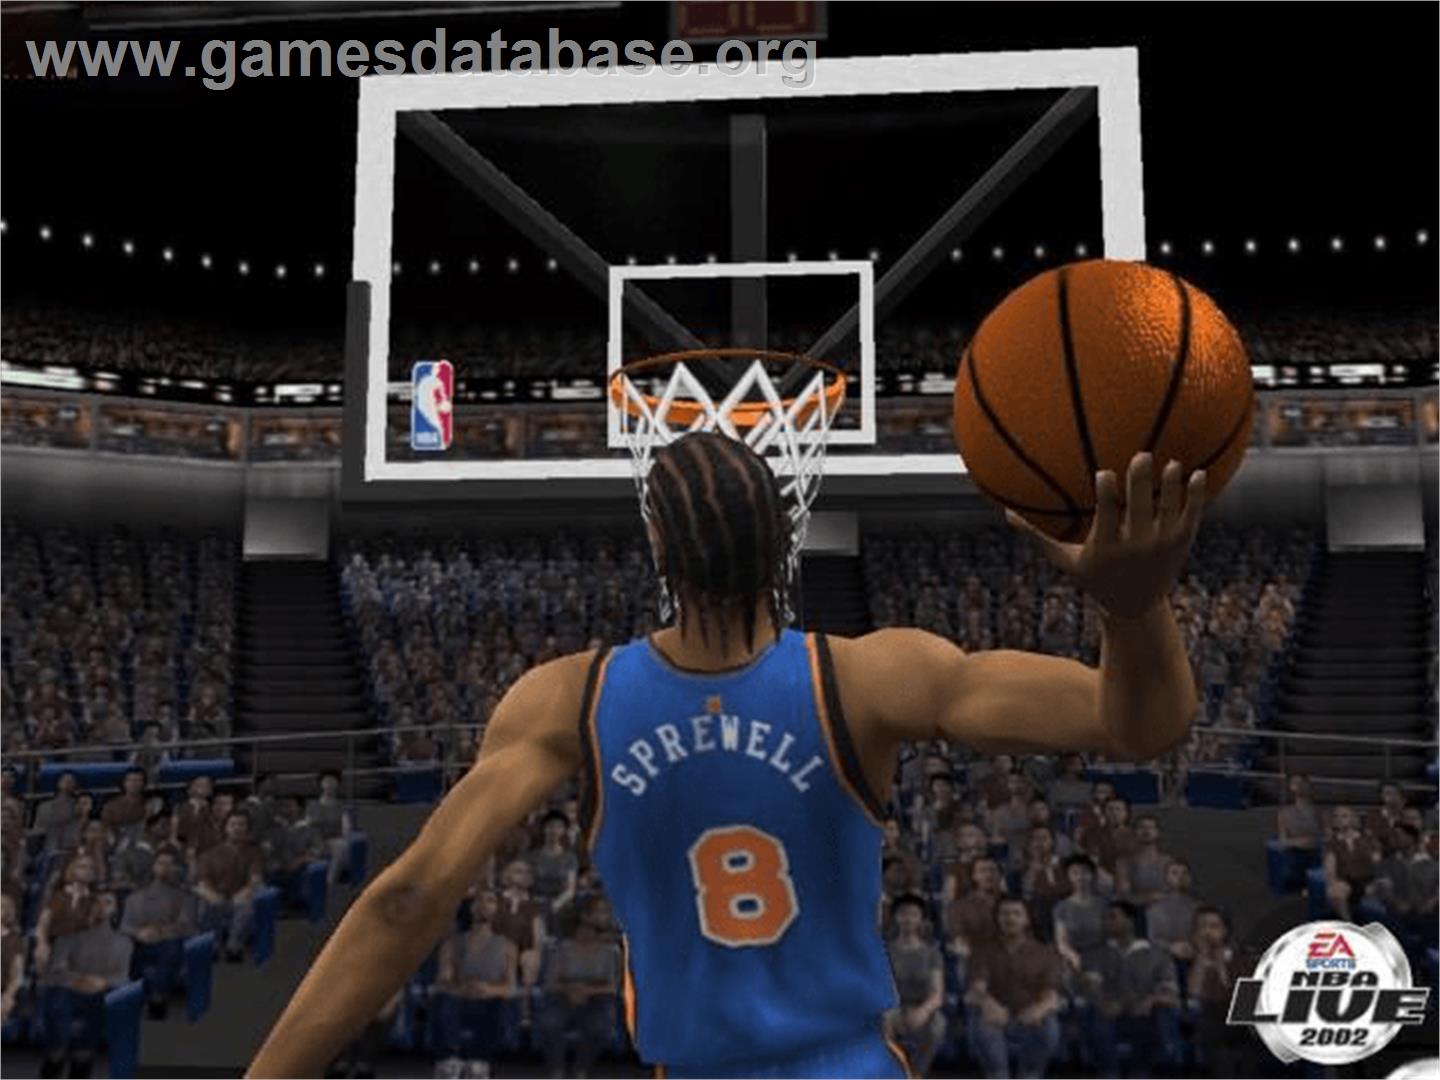 NBA Live 2002 - Microsoft Xbox - Artwork - In Game